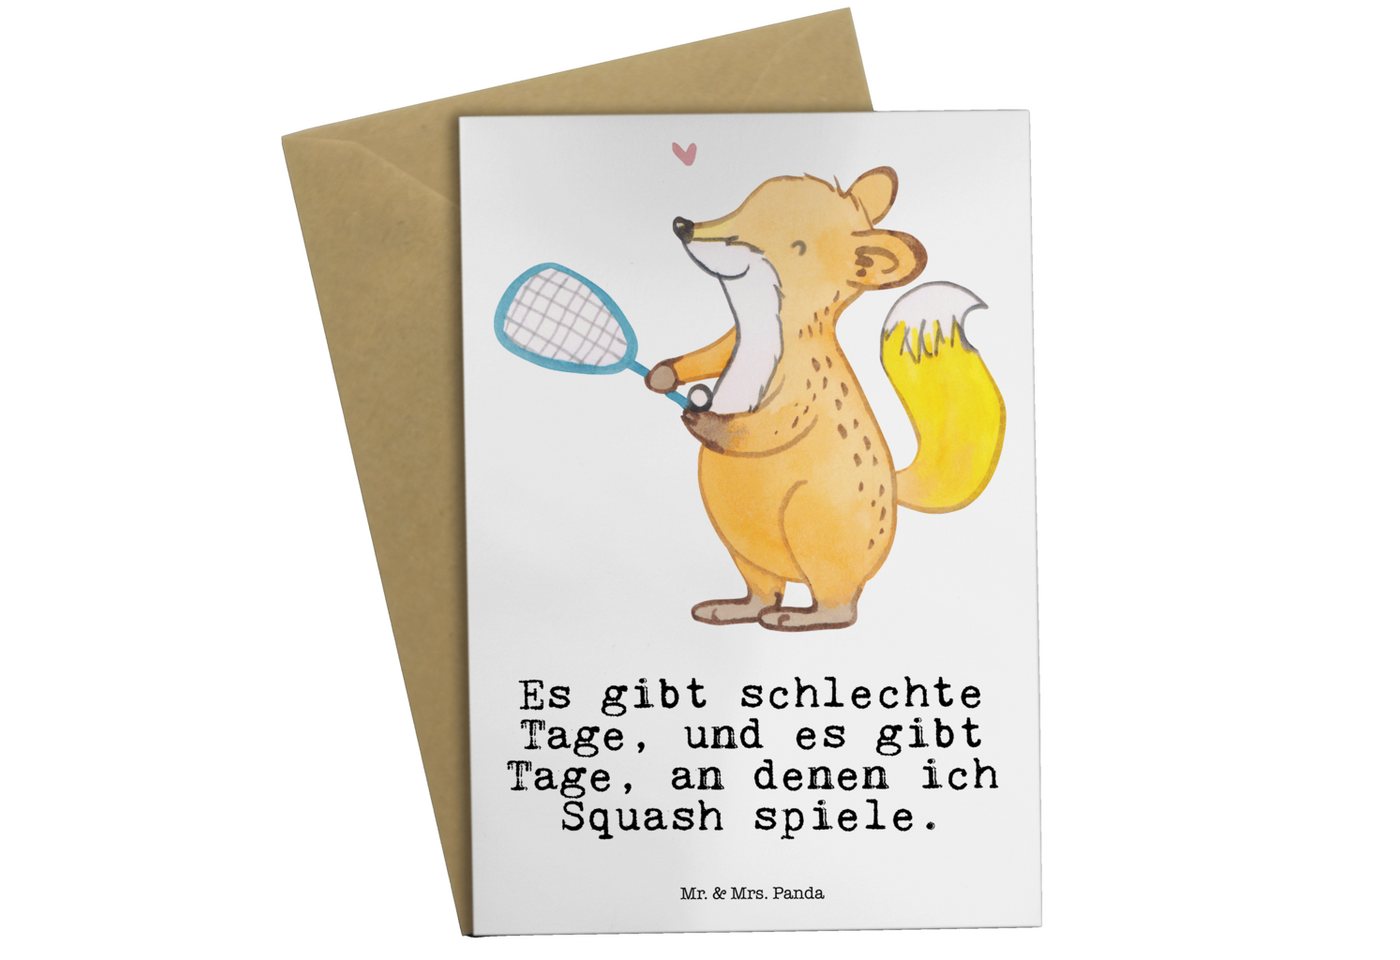 Mr. & Mrs. Panda Grußkarte Fuchs Squash spielen - Weiß - Geschenk, Grußkarte, Ballsport, Hobby, Hochglänzende Veredelung von Mr. & Mrs. Panda